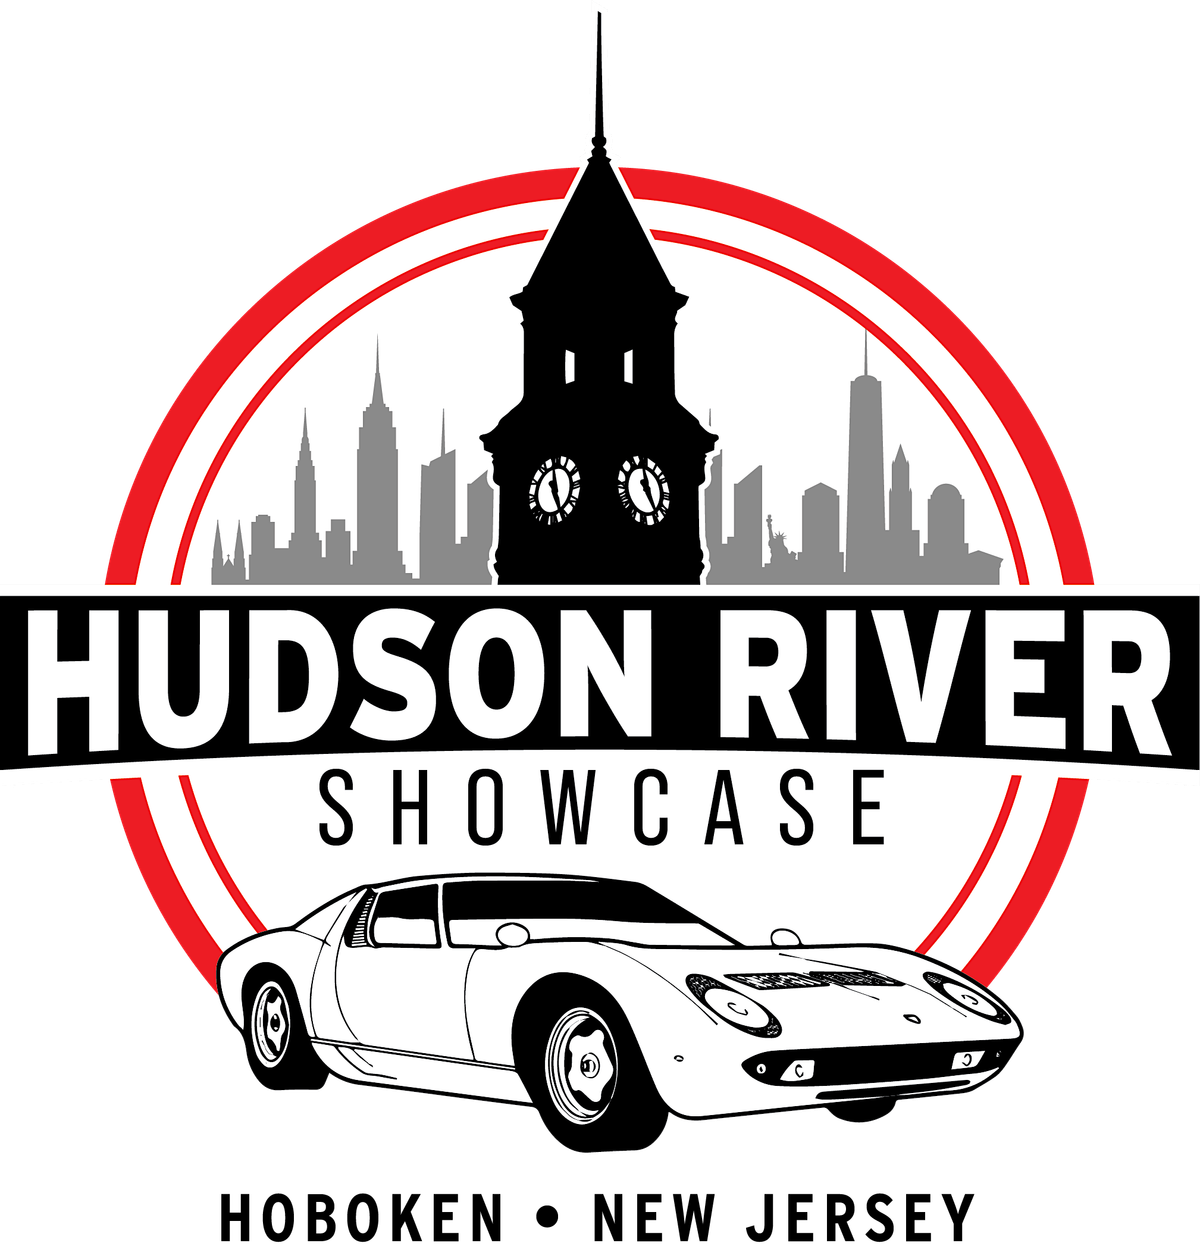 Hudson River Showcase